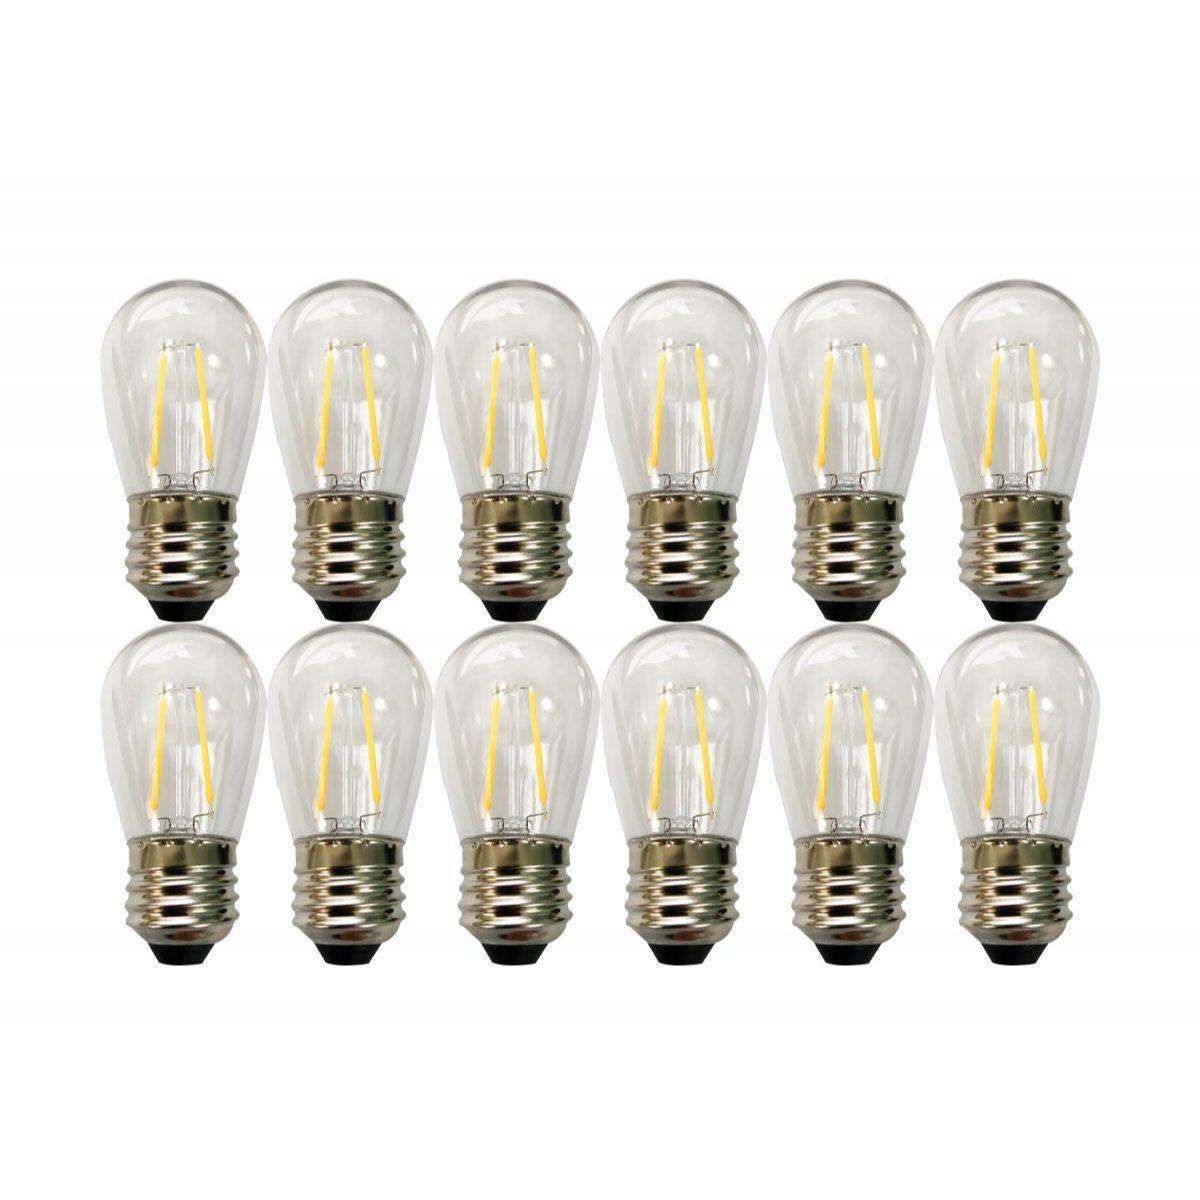 Outdoor LED String Light, 24 Feet, 12 LED filament bulbs, 2700K Warm white